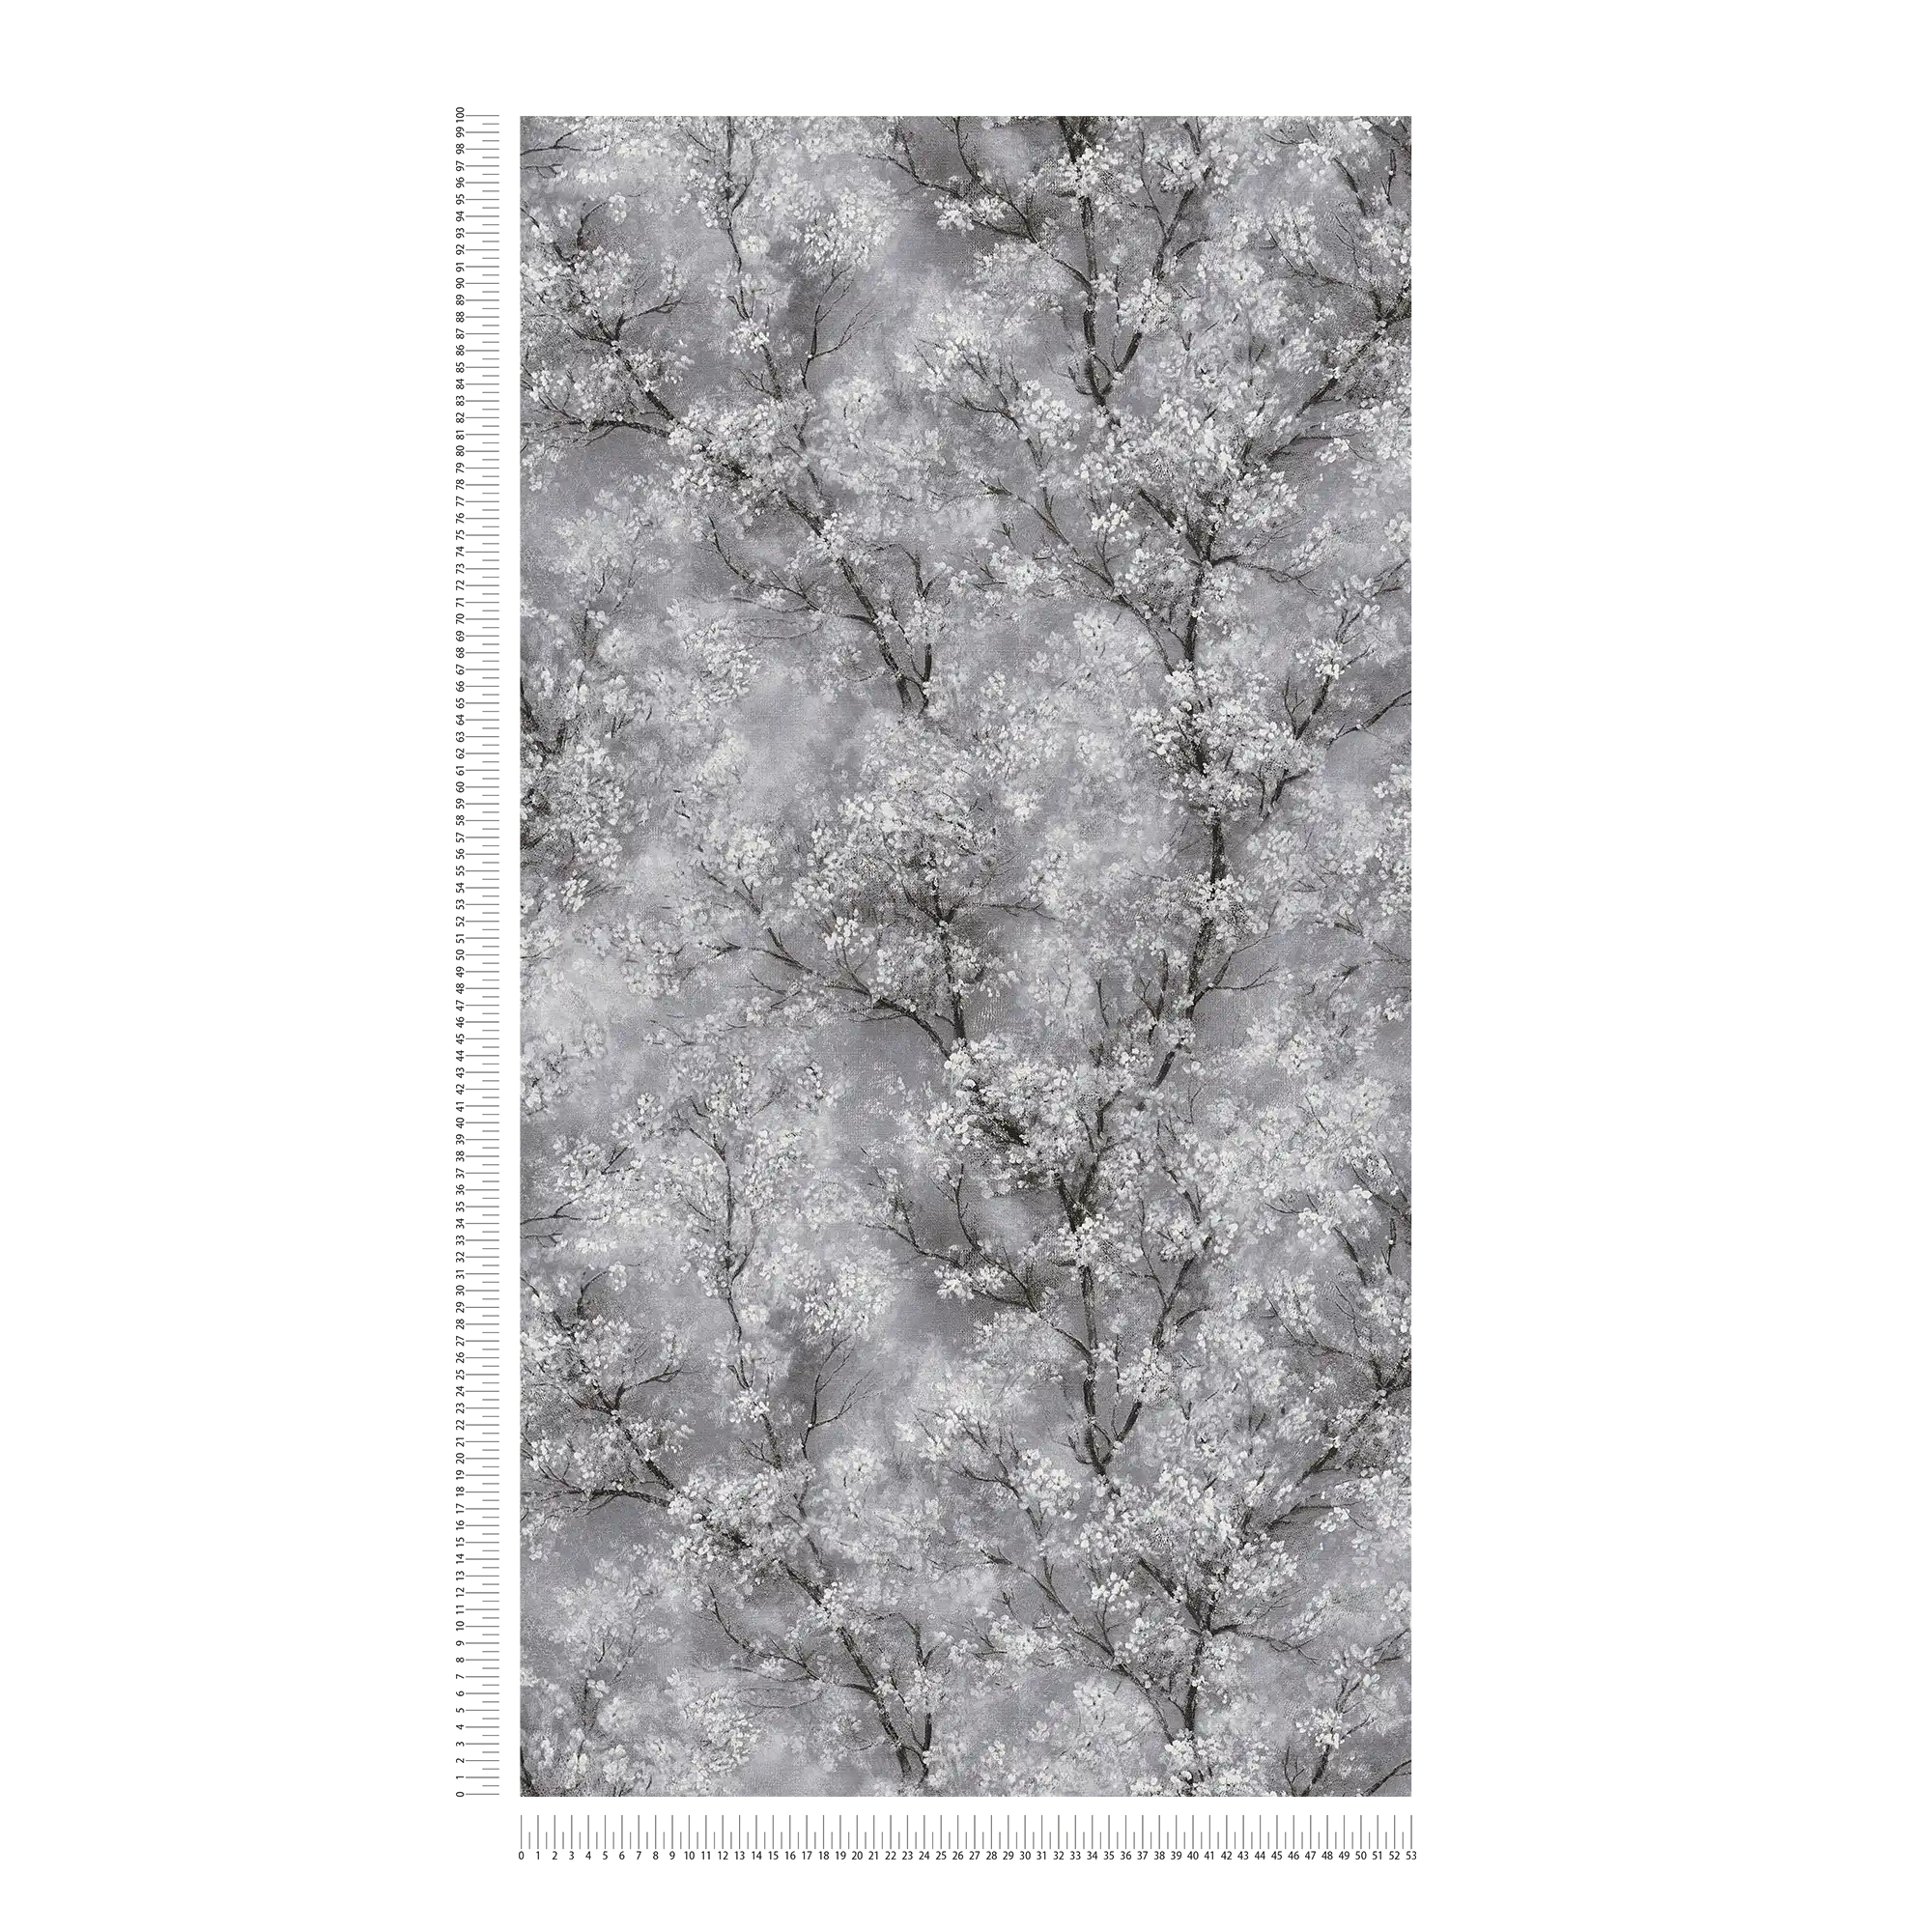             Papier peint Fleurs de cerisier Effet scintillant - gris, noir, blanc
        